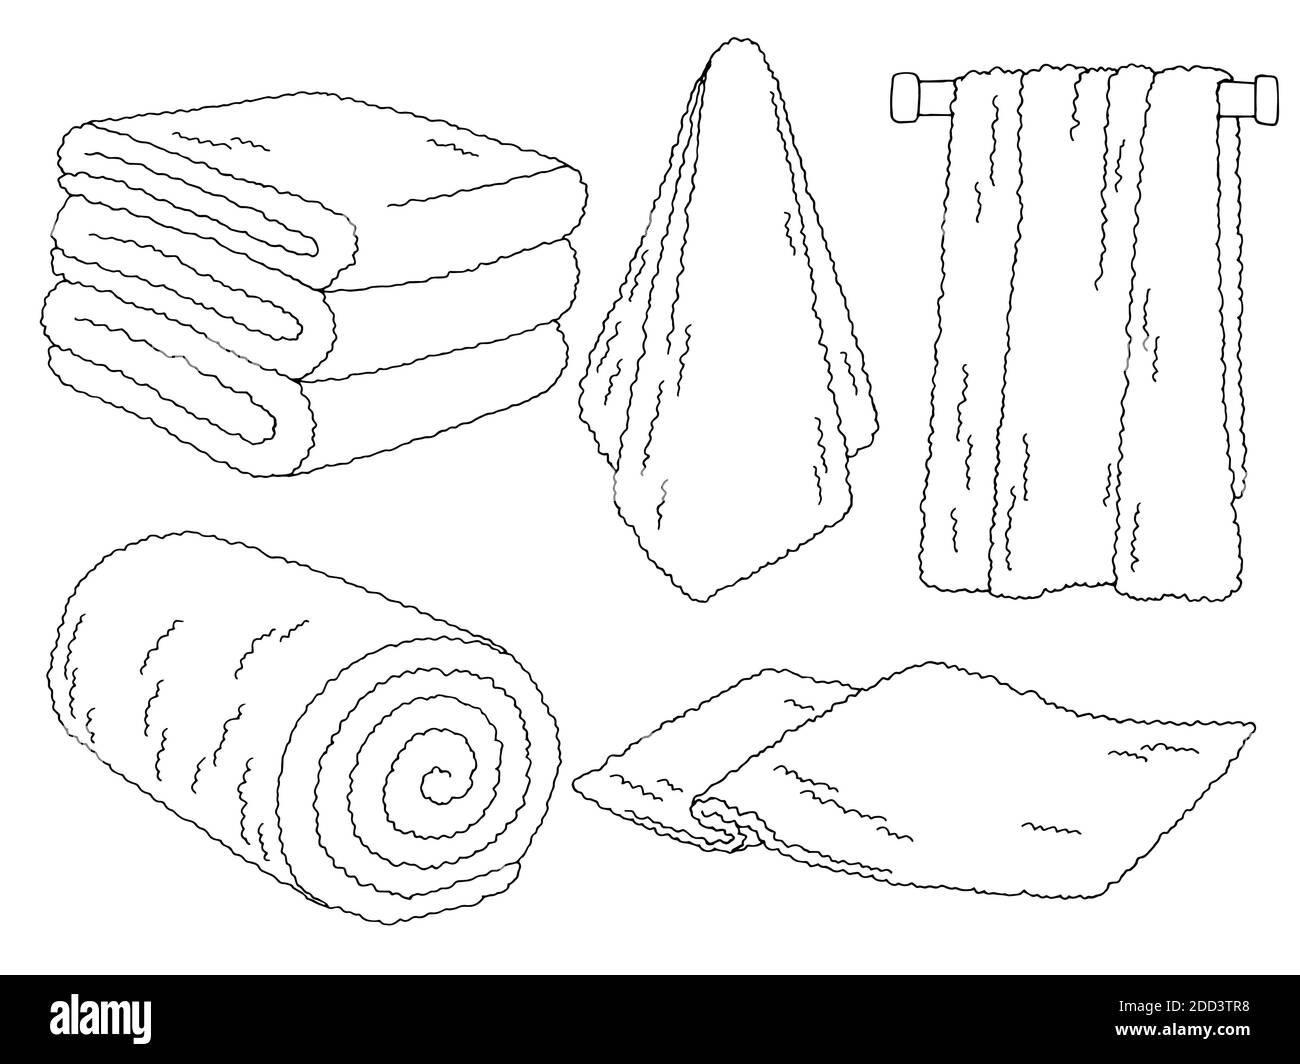 Premium Vector | Towel hanging bathroom hand drawn sketch line drawing  vector icon cartoon illustration